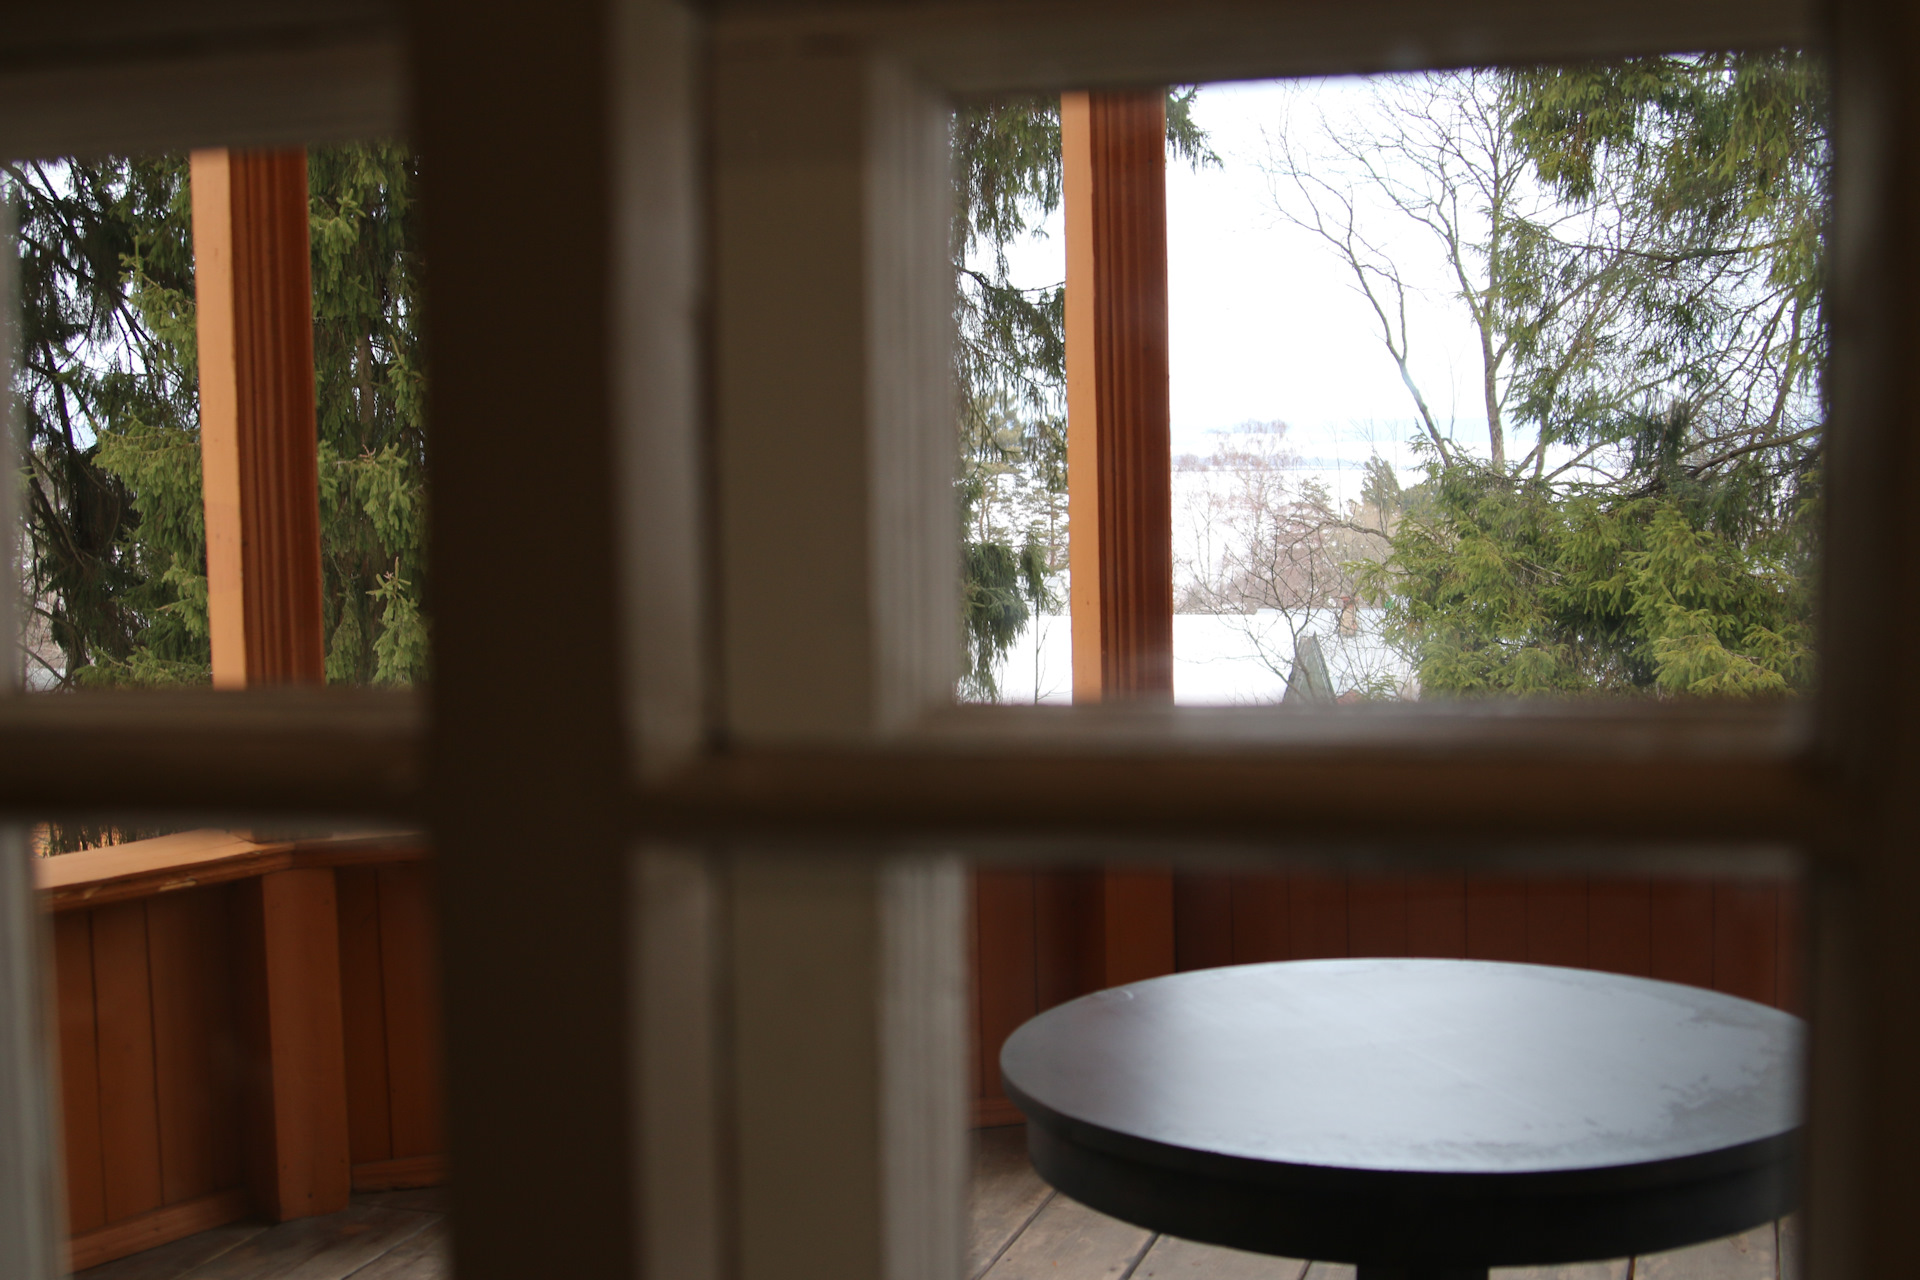 Вид из окна дома Пришвина. Рассказ про вид с окна.